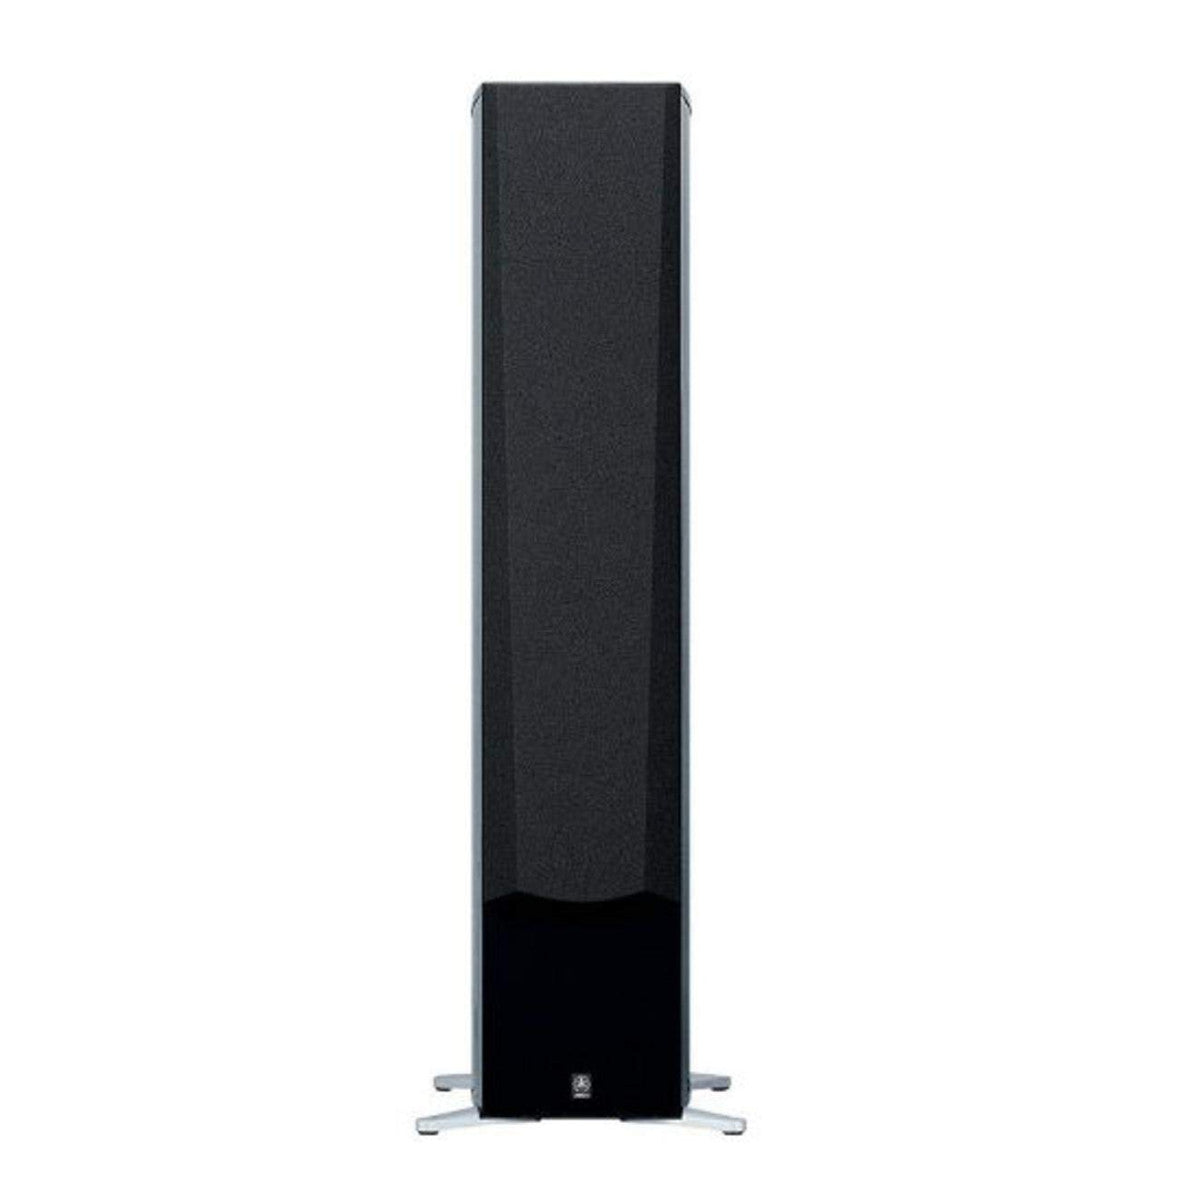 Yamaha NS-777 3-Way Bass Reflex Floorstanding Speaker